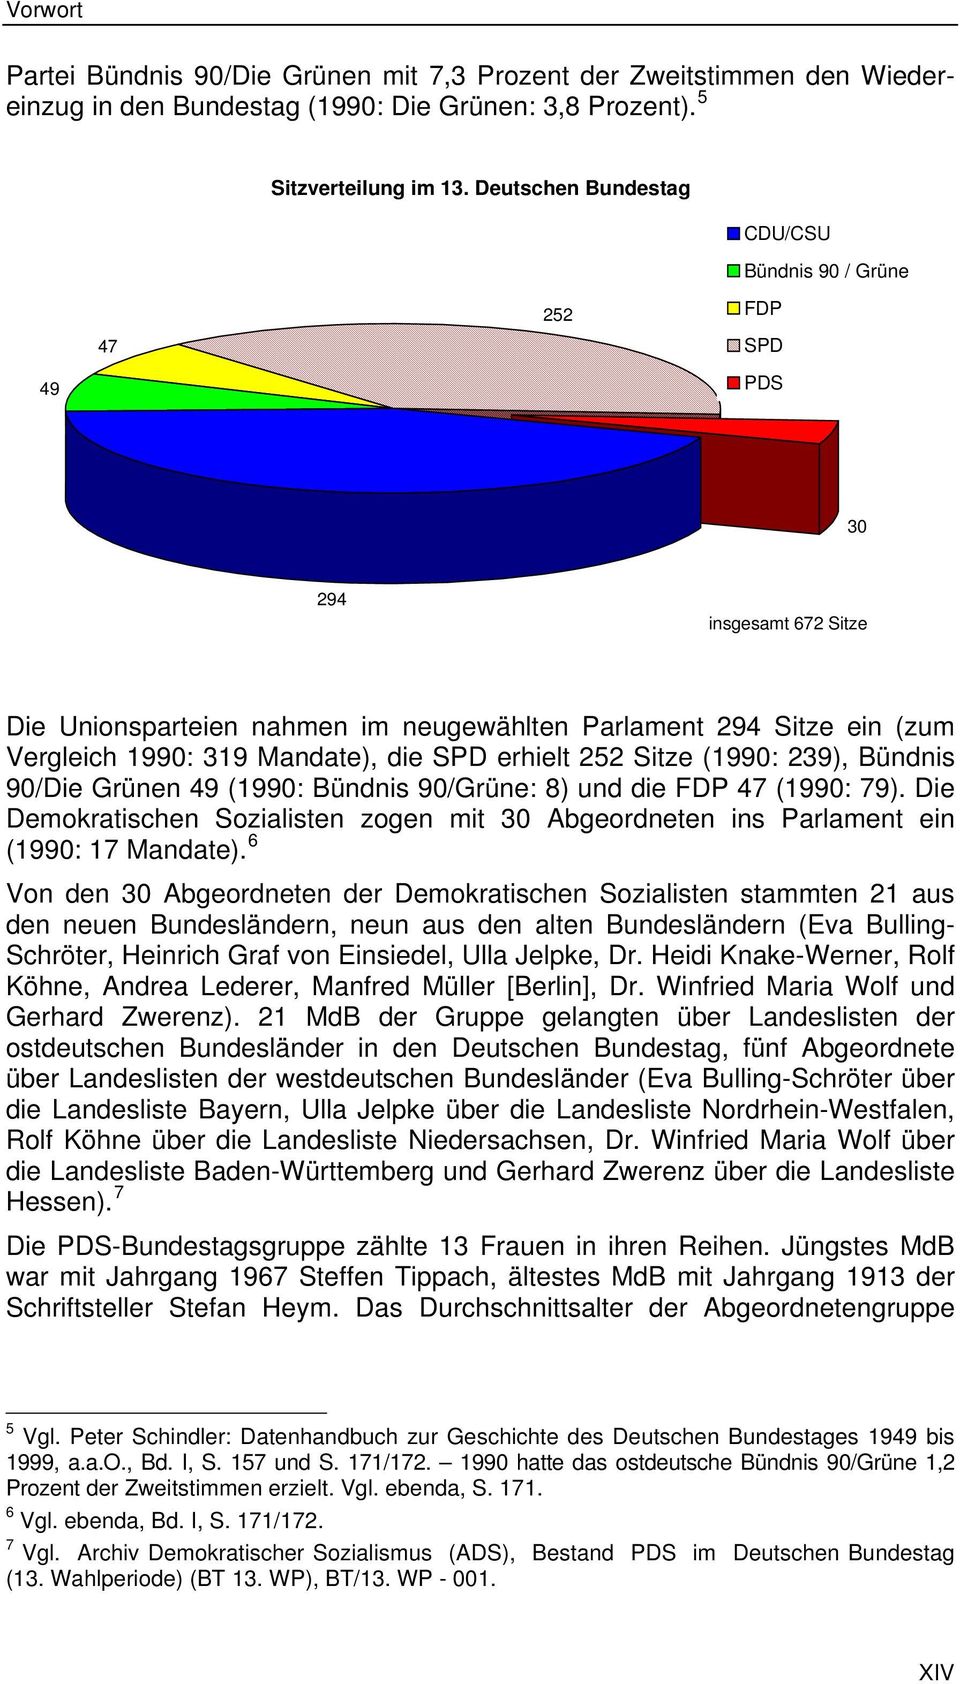 die SPD erhielt 252 Sitze (1990: 239), Bündnis 90/Die Grünen 49 (1990: Bündnis 90/Grüne: 8) und die FDP 47 (1990: 79).